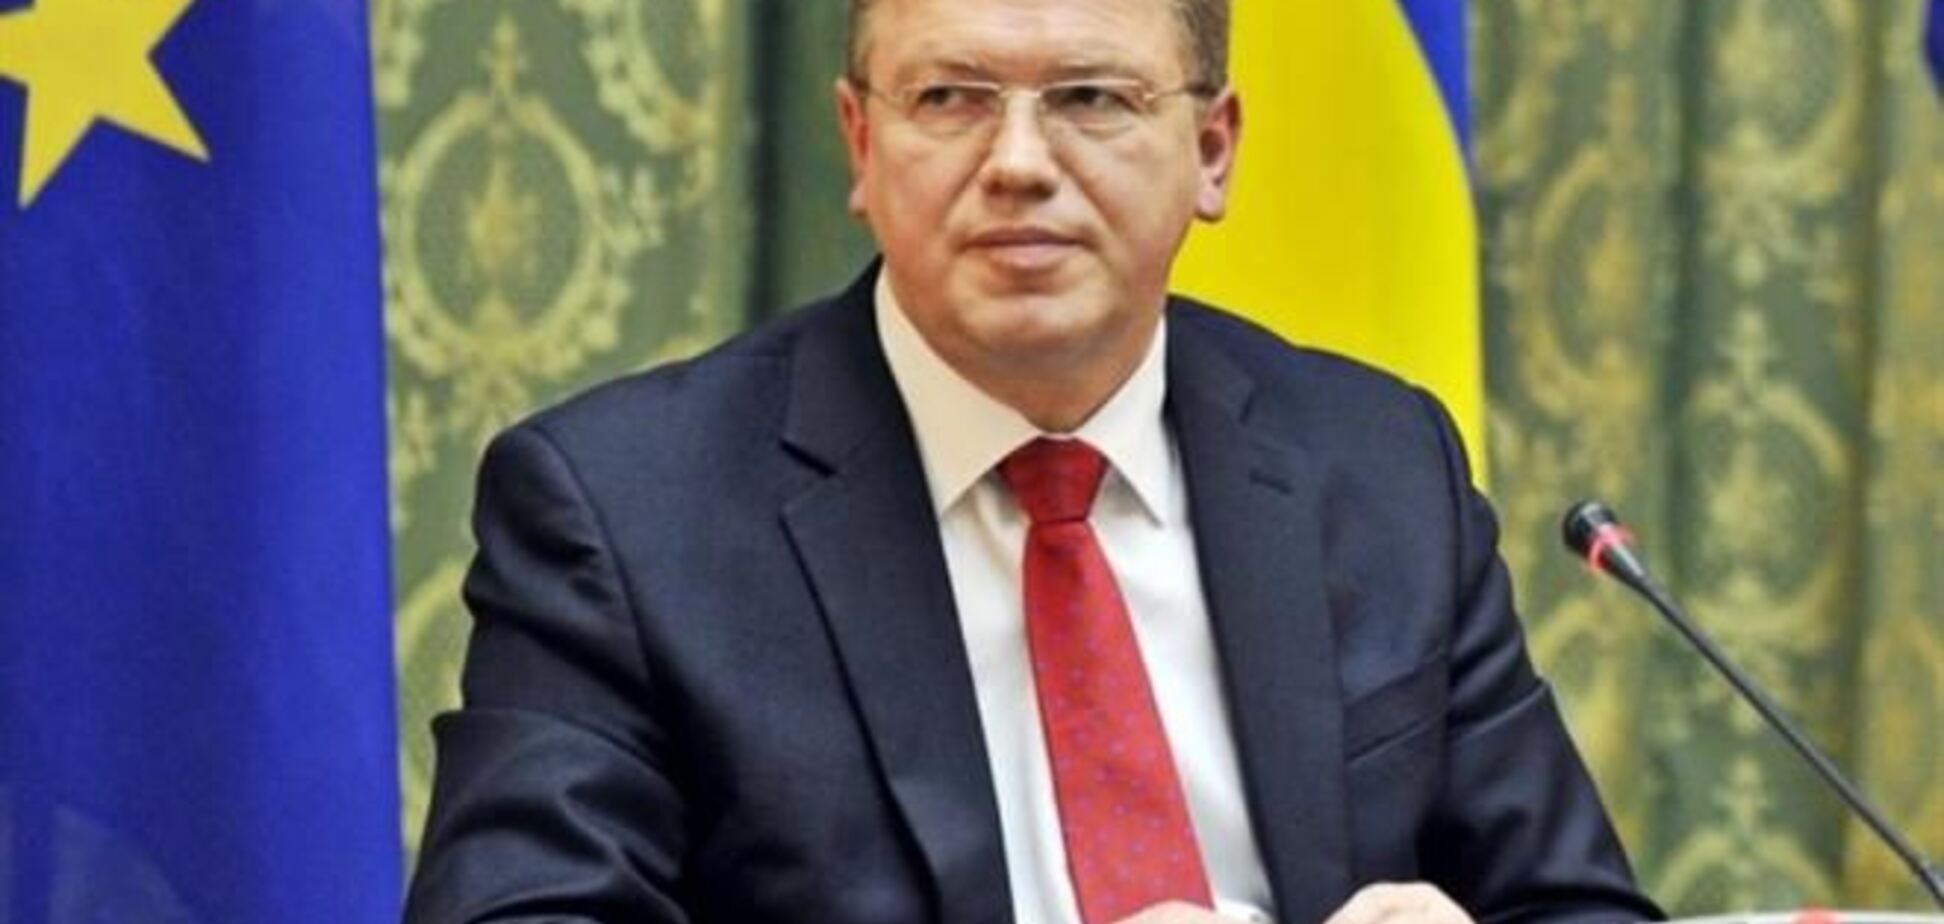 Єврокомісар Фюле відвідає Україну в п'ятницю